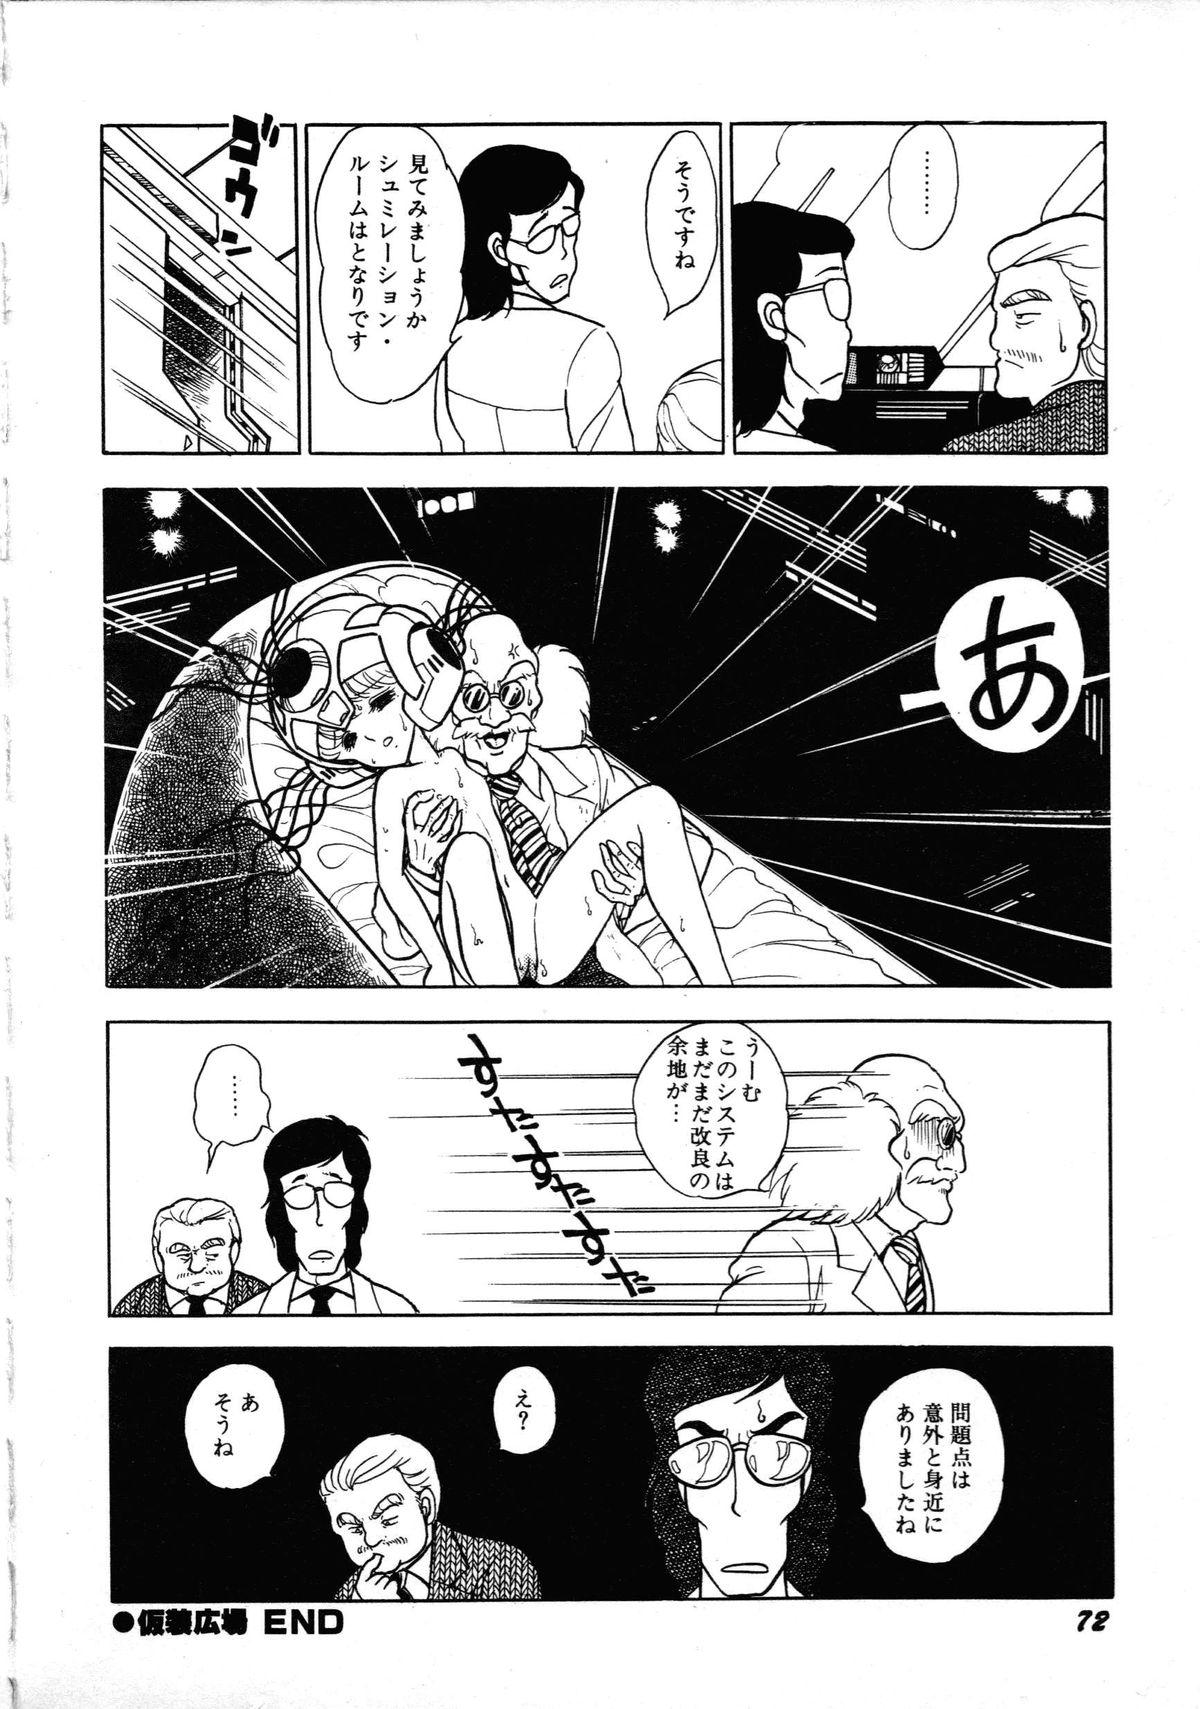 [Anthology] Robot & Bishoujo Kessakusen - Lemon People 1982-1986 75